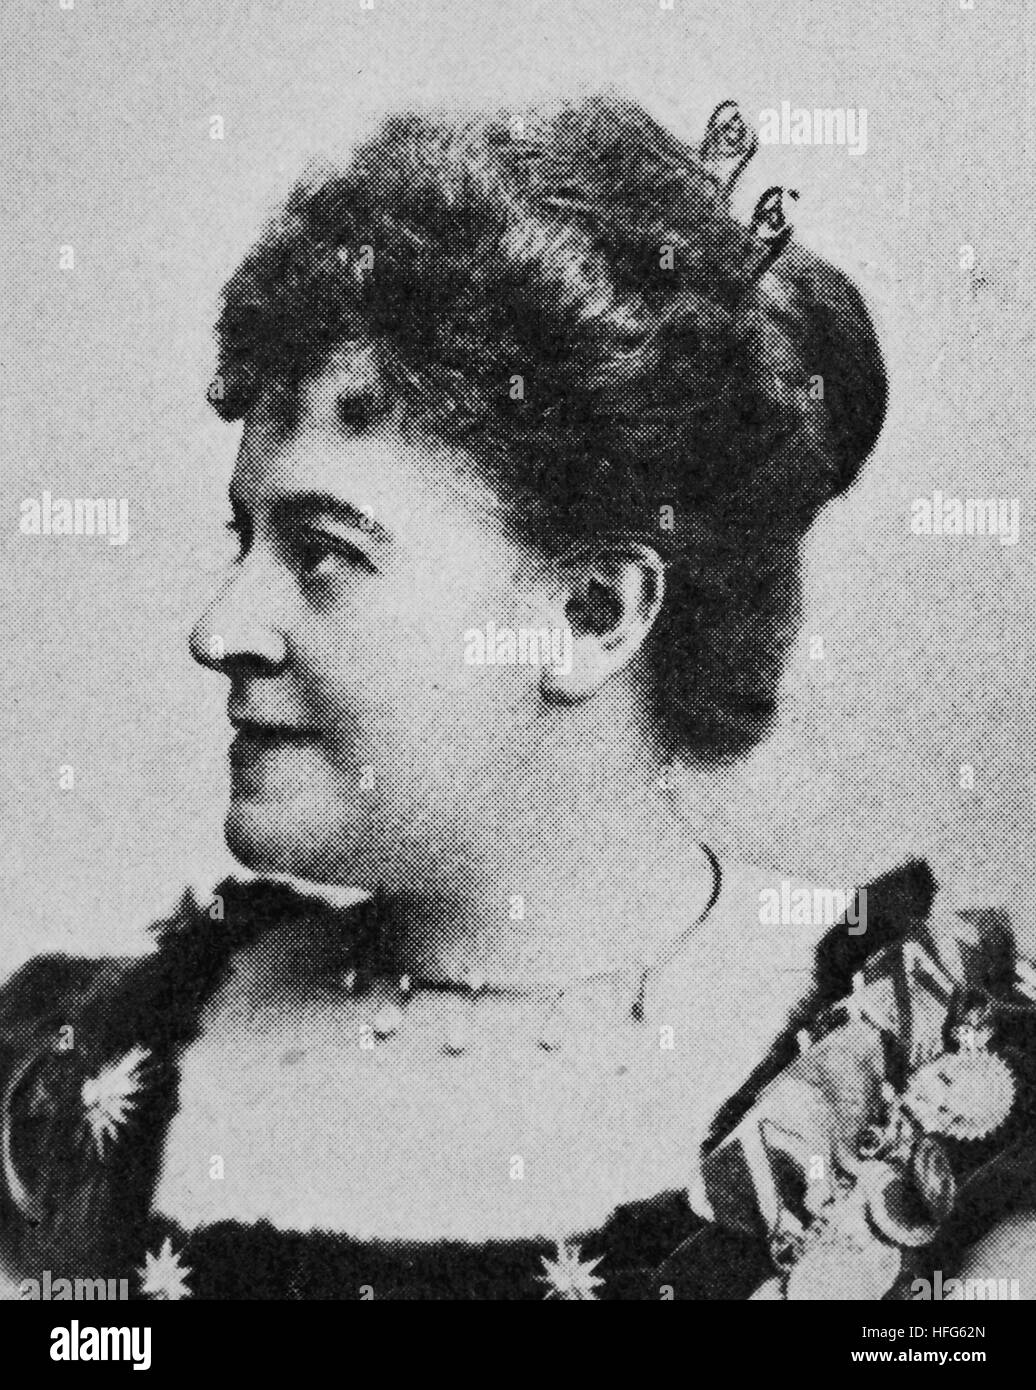 Therese Malten war der Künstlername von Therese Mueller, 1855-1930, einem bekannten deutschen dramatischen Sopran, Reproduktion Foto aus dem Jahr 1895, digital verbessert Stockfoto